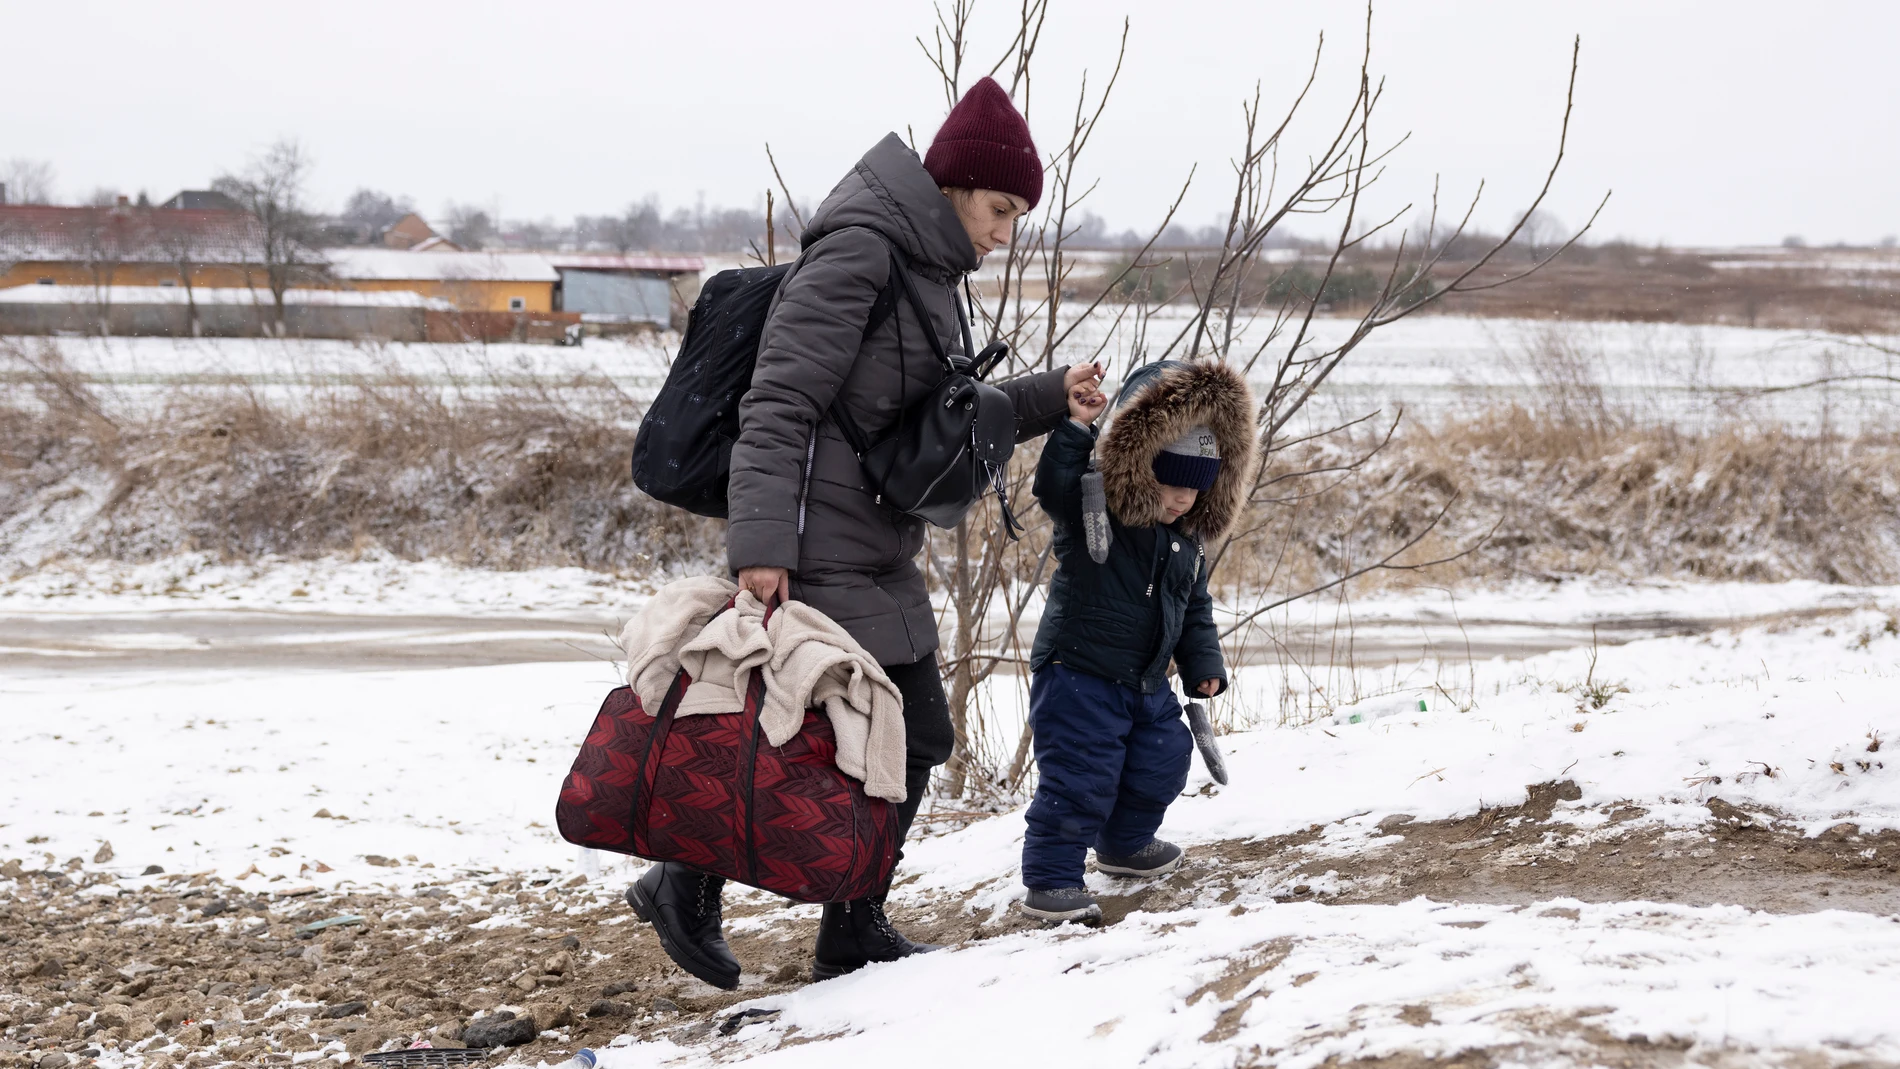 Refugiados ucranianos huyendo de la guerra con Rusia